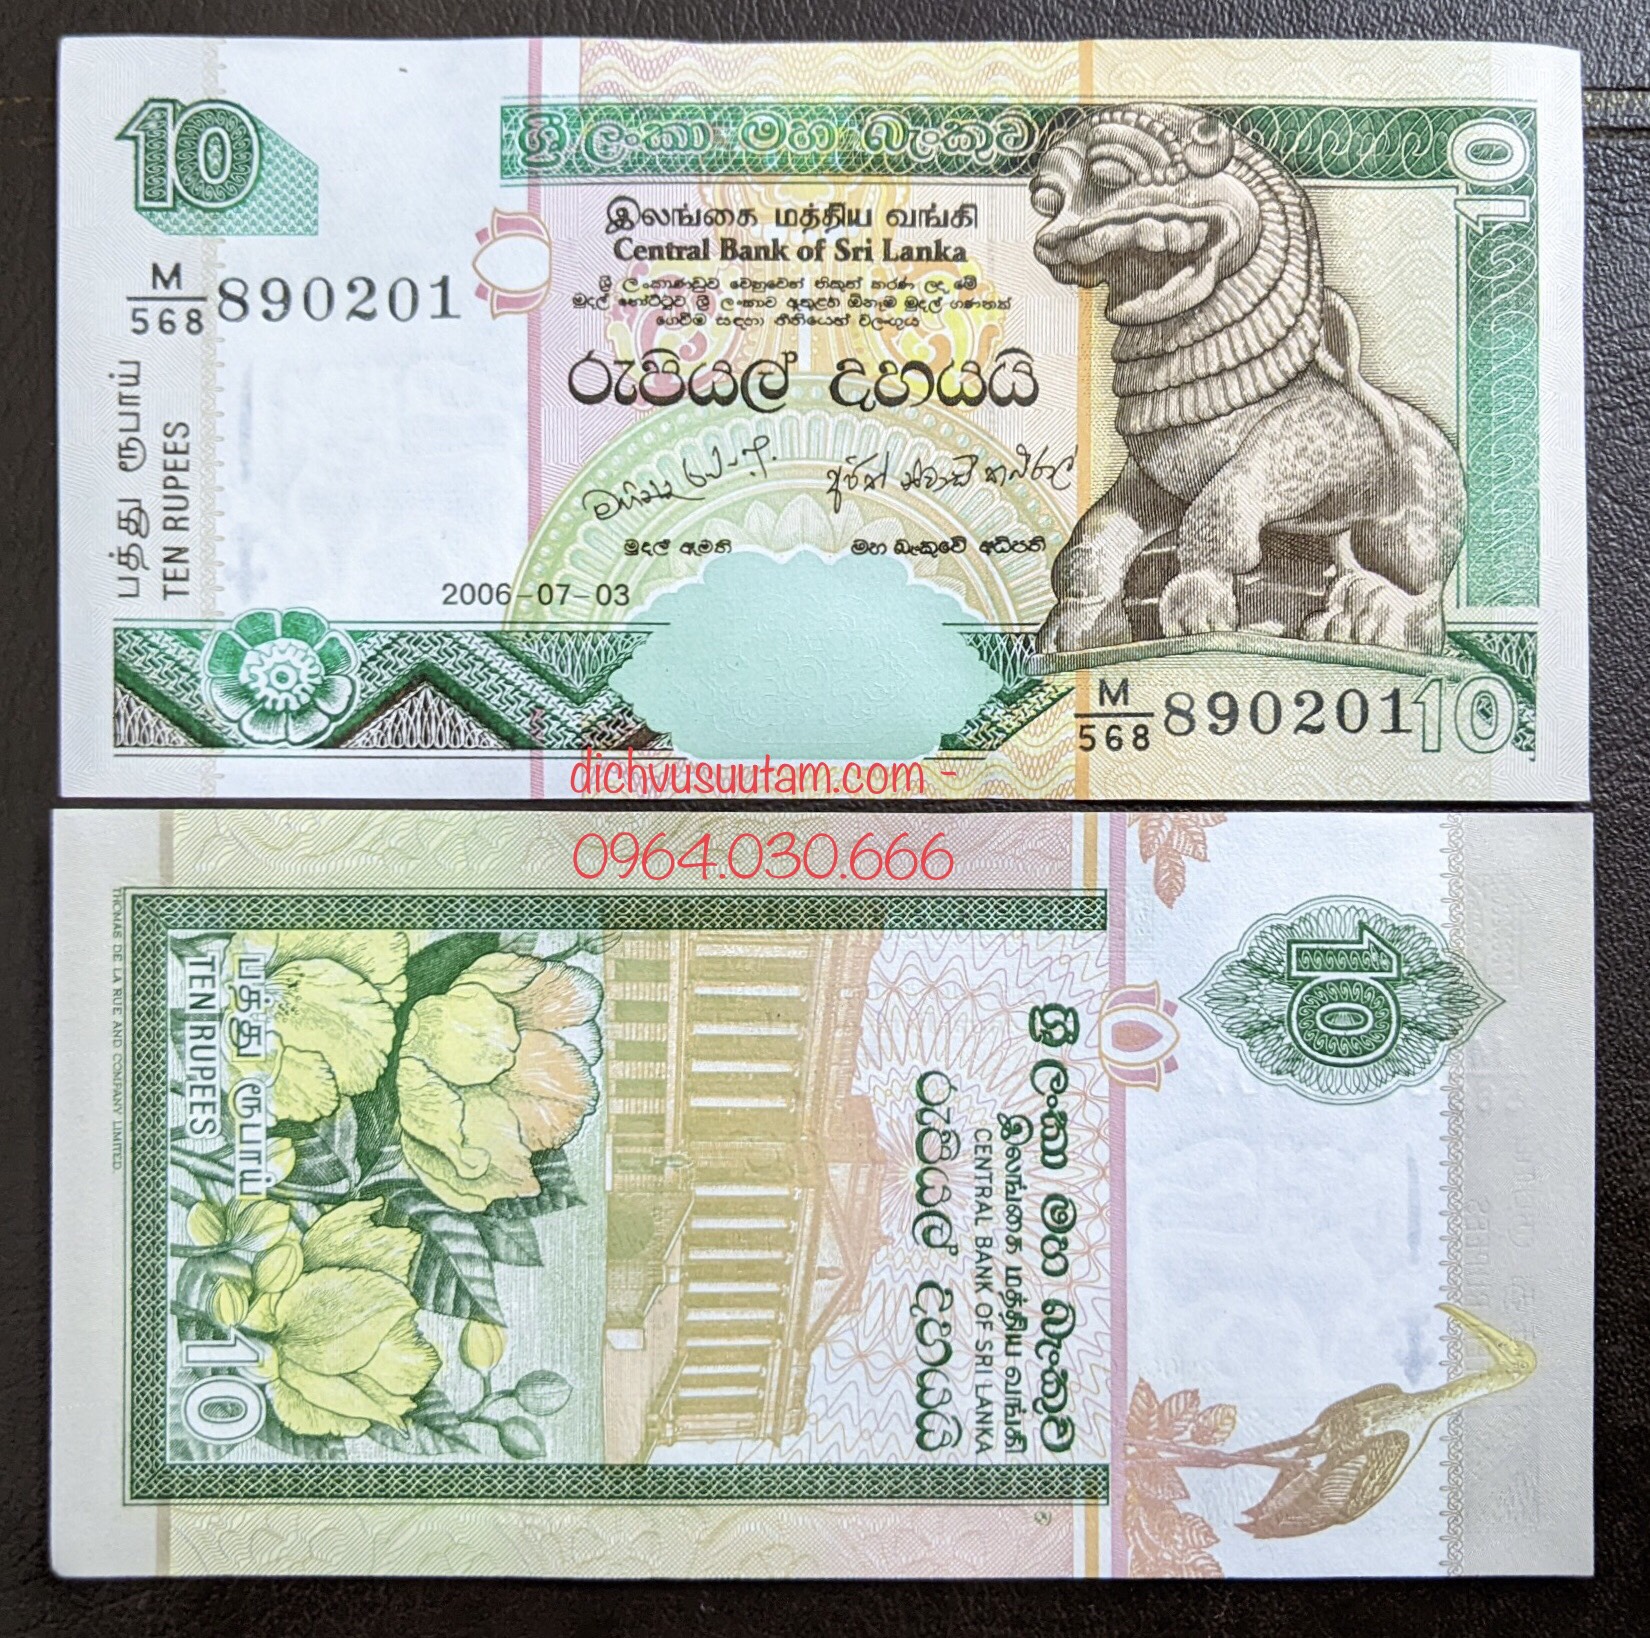 Tiền con Lân Srilanka 10 rupees mới cứng sưu tầm